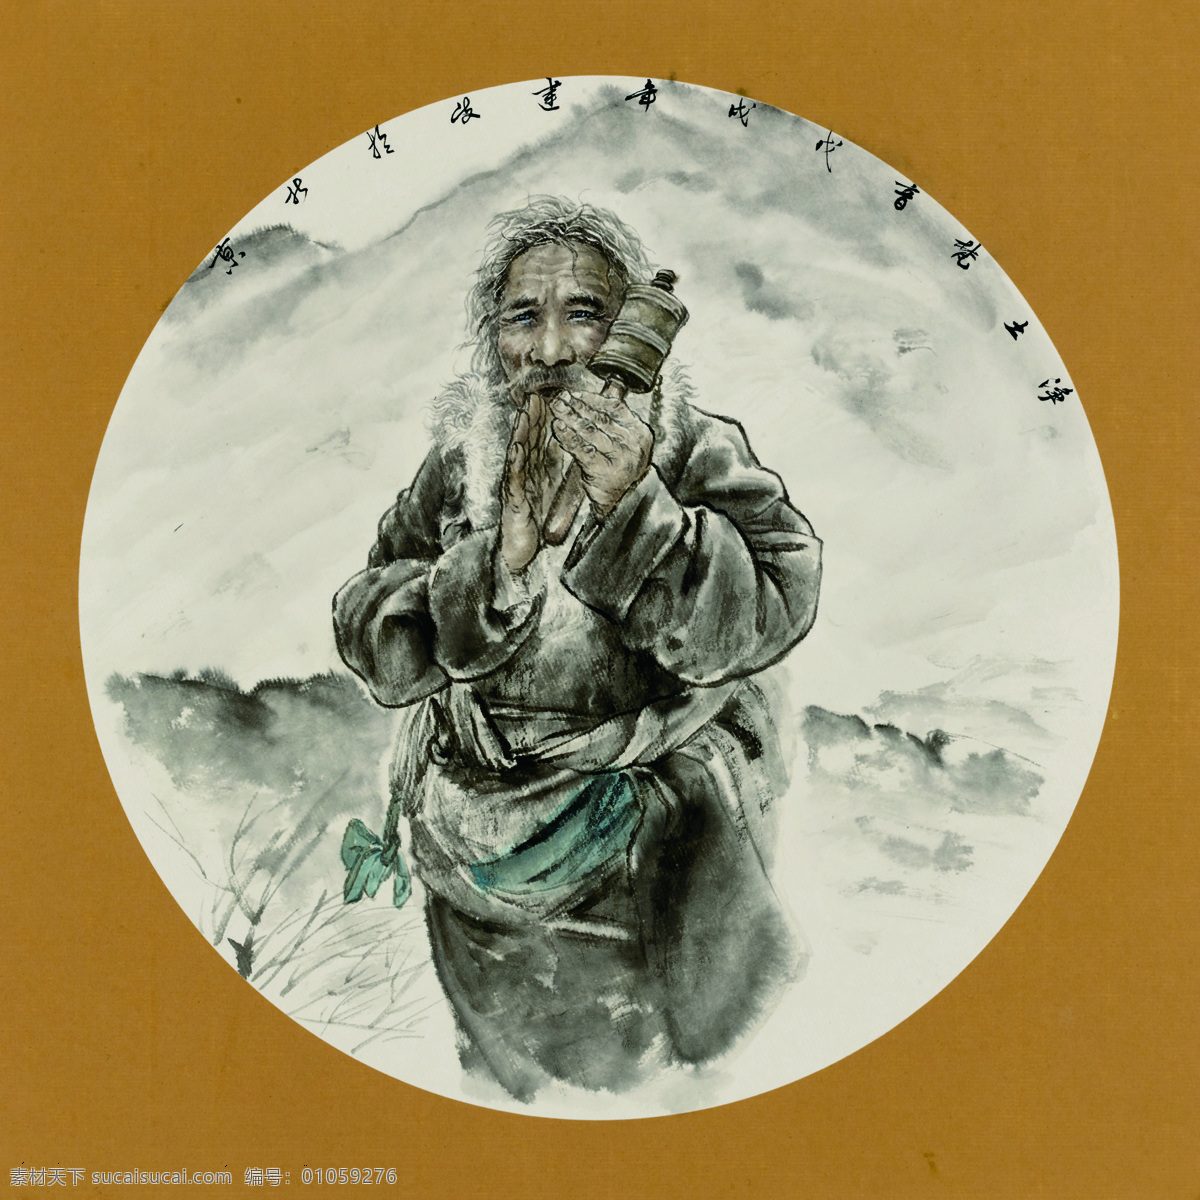 祈祷 崔建岐 国画 扇面 藏族人物 文化艺术 绘画书法